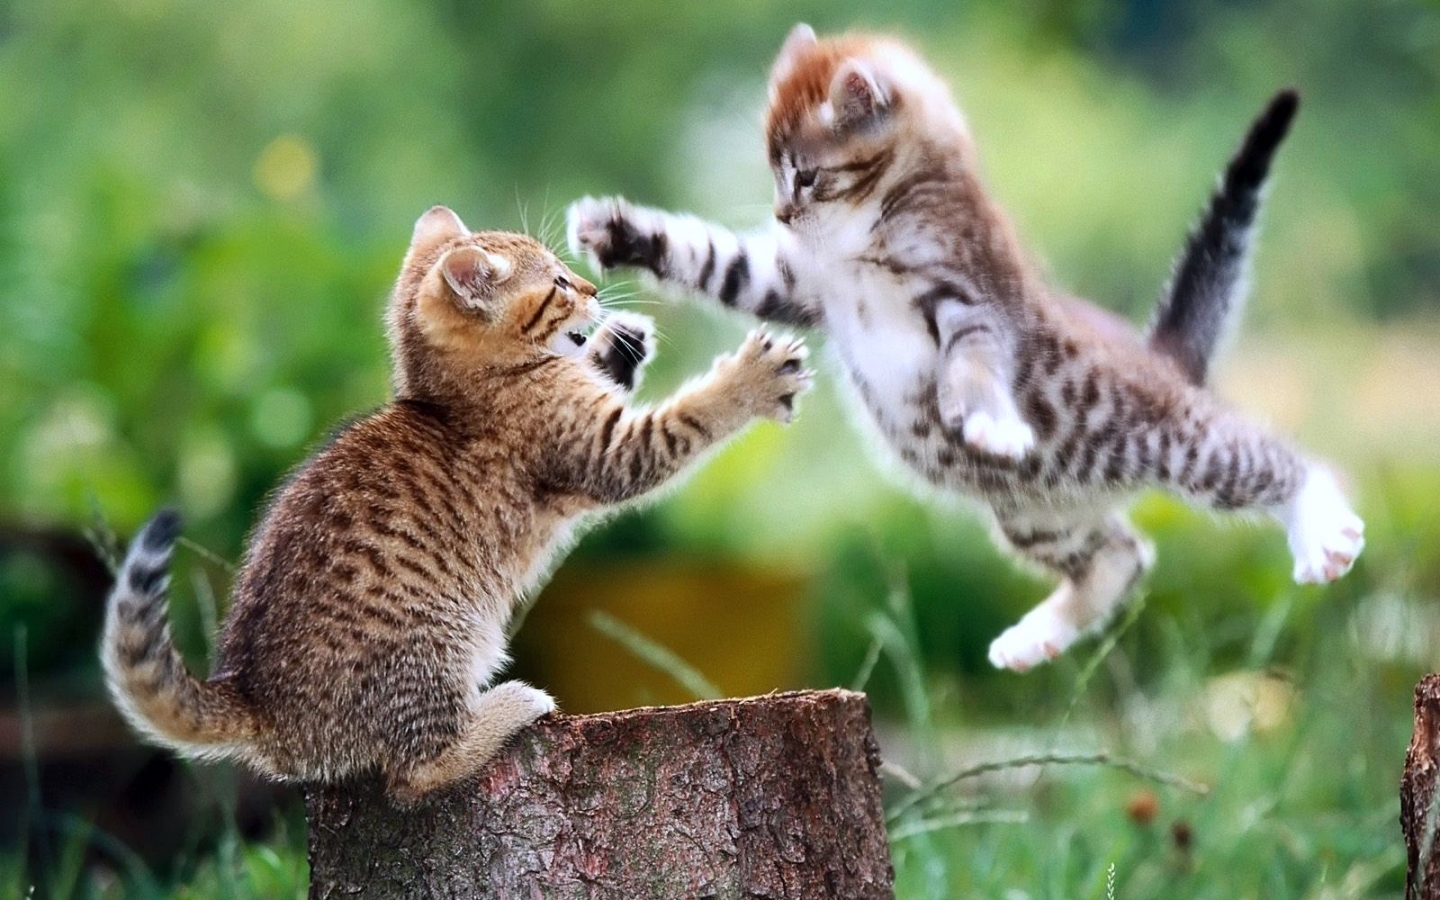 Скачать обои бесплатно Животные, Кошки (Коты Котики) картинка на рабочий стол ПК